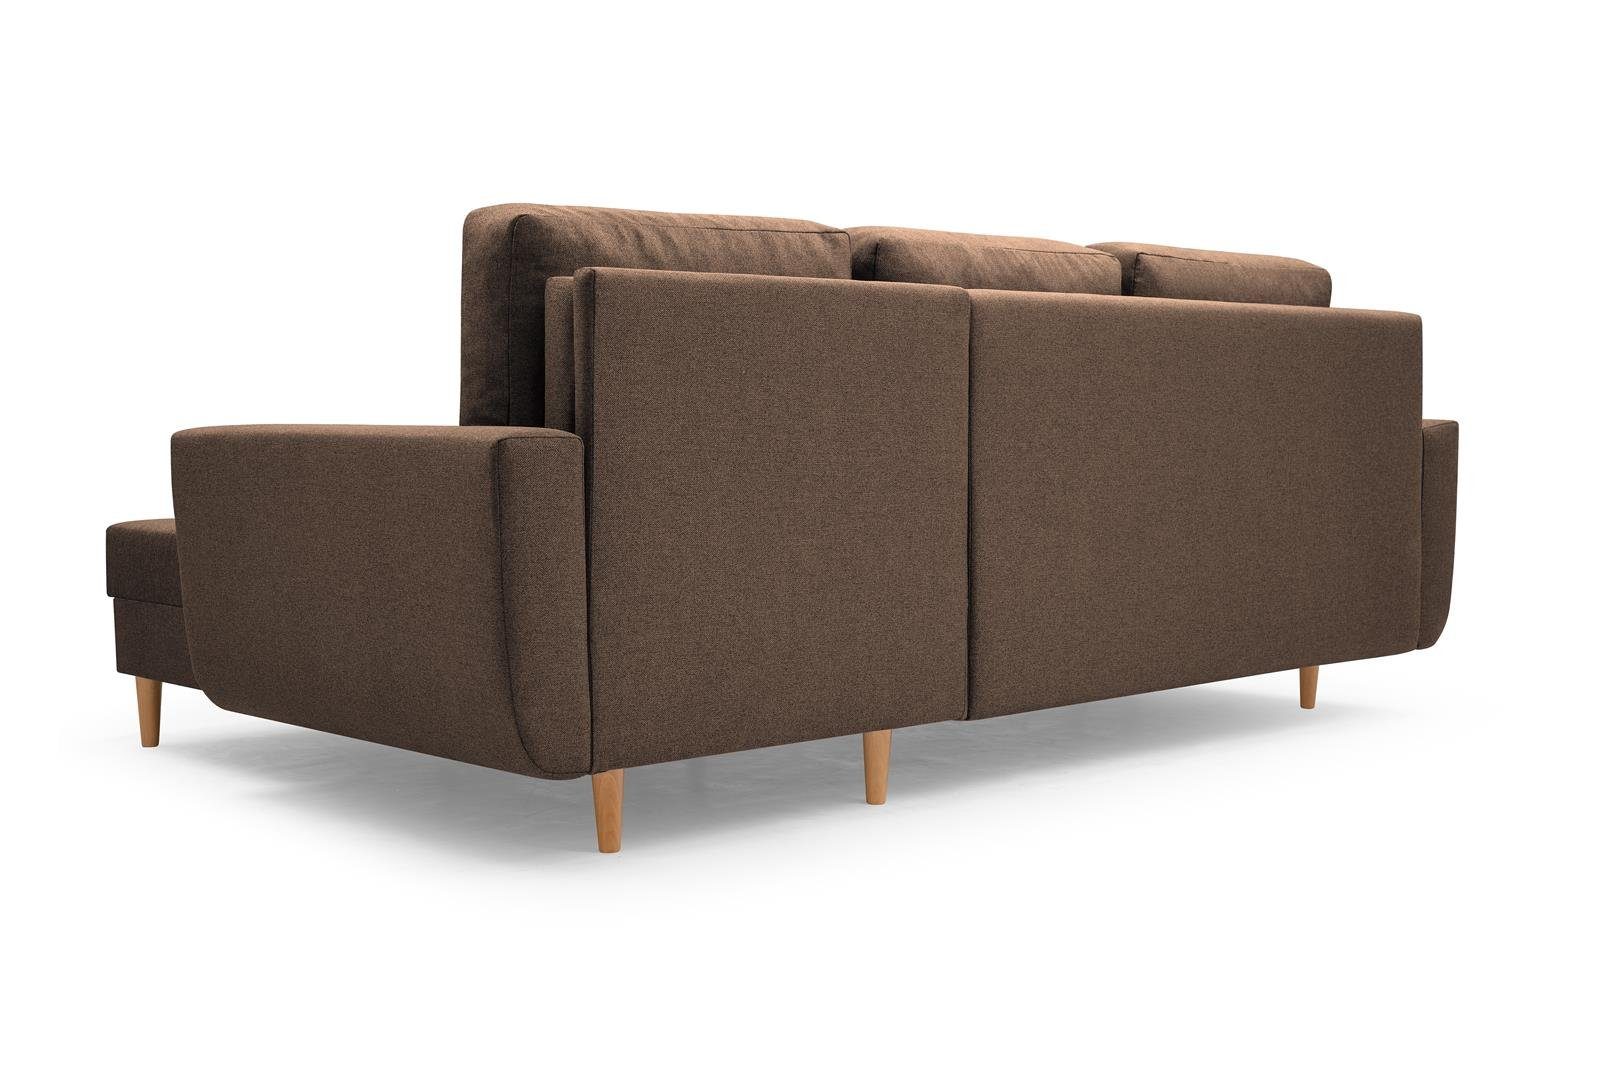 Beautysofa Polsterecke Couch Sofa universelle mane Schlaffunktion, mit Ecksofa mit (malmo 28) Braun new ONLY